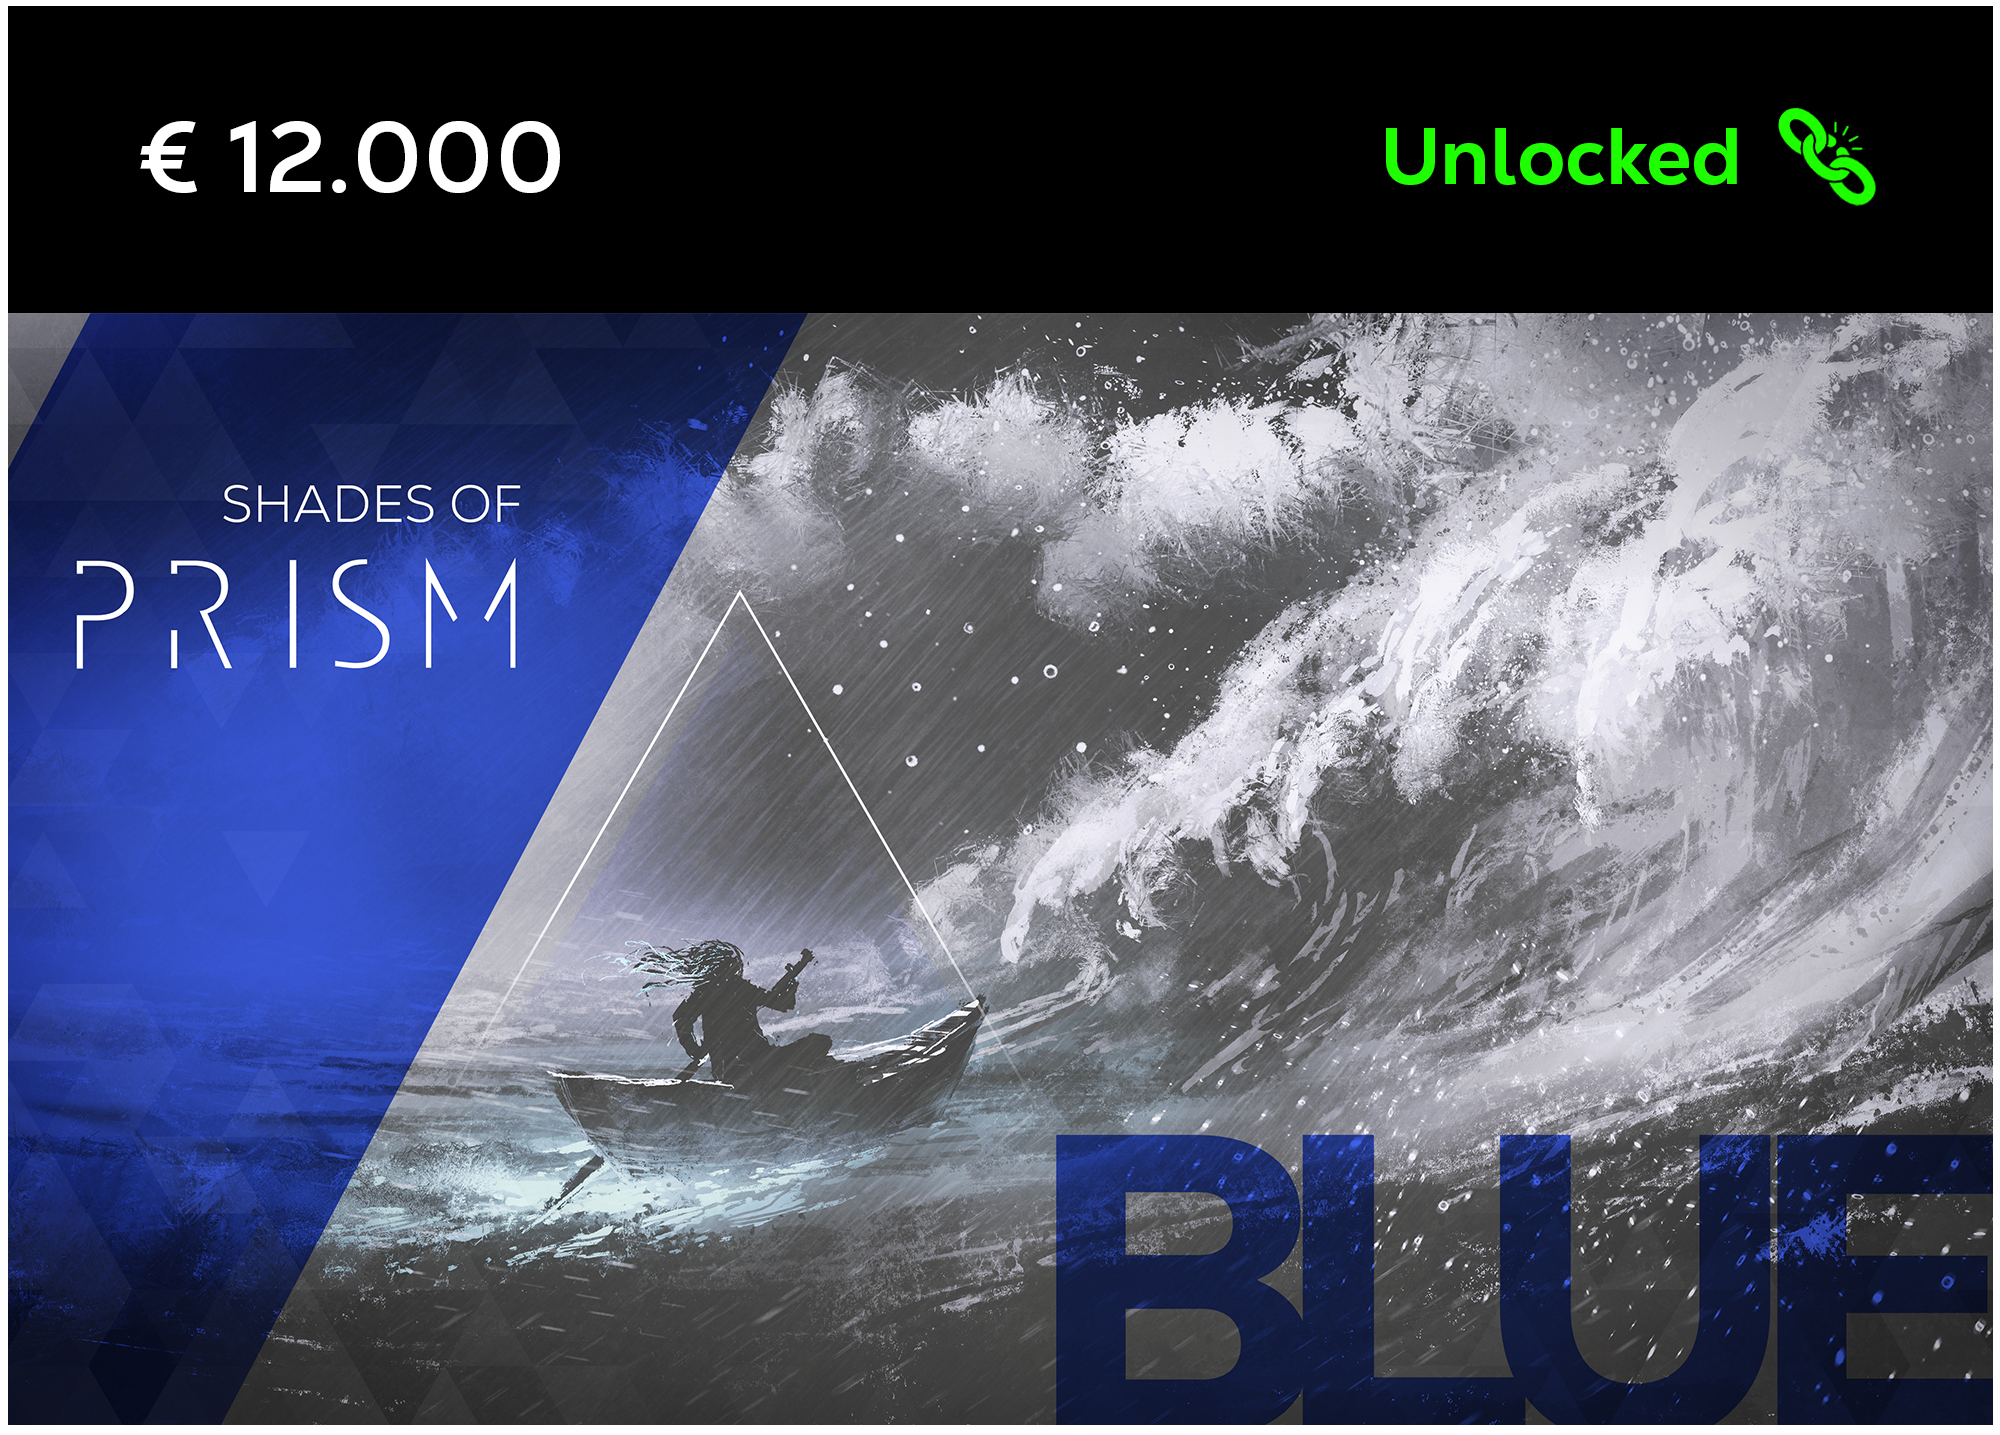 Blue - Unlocked